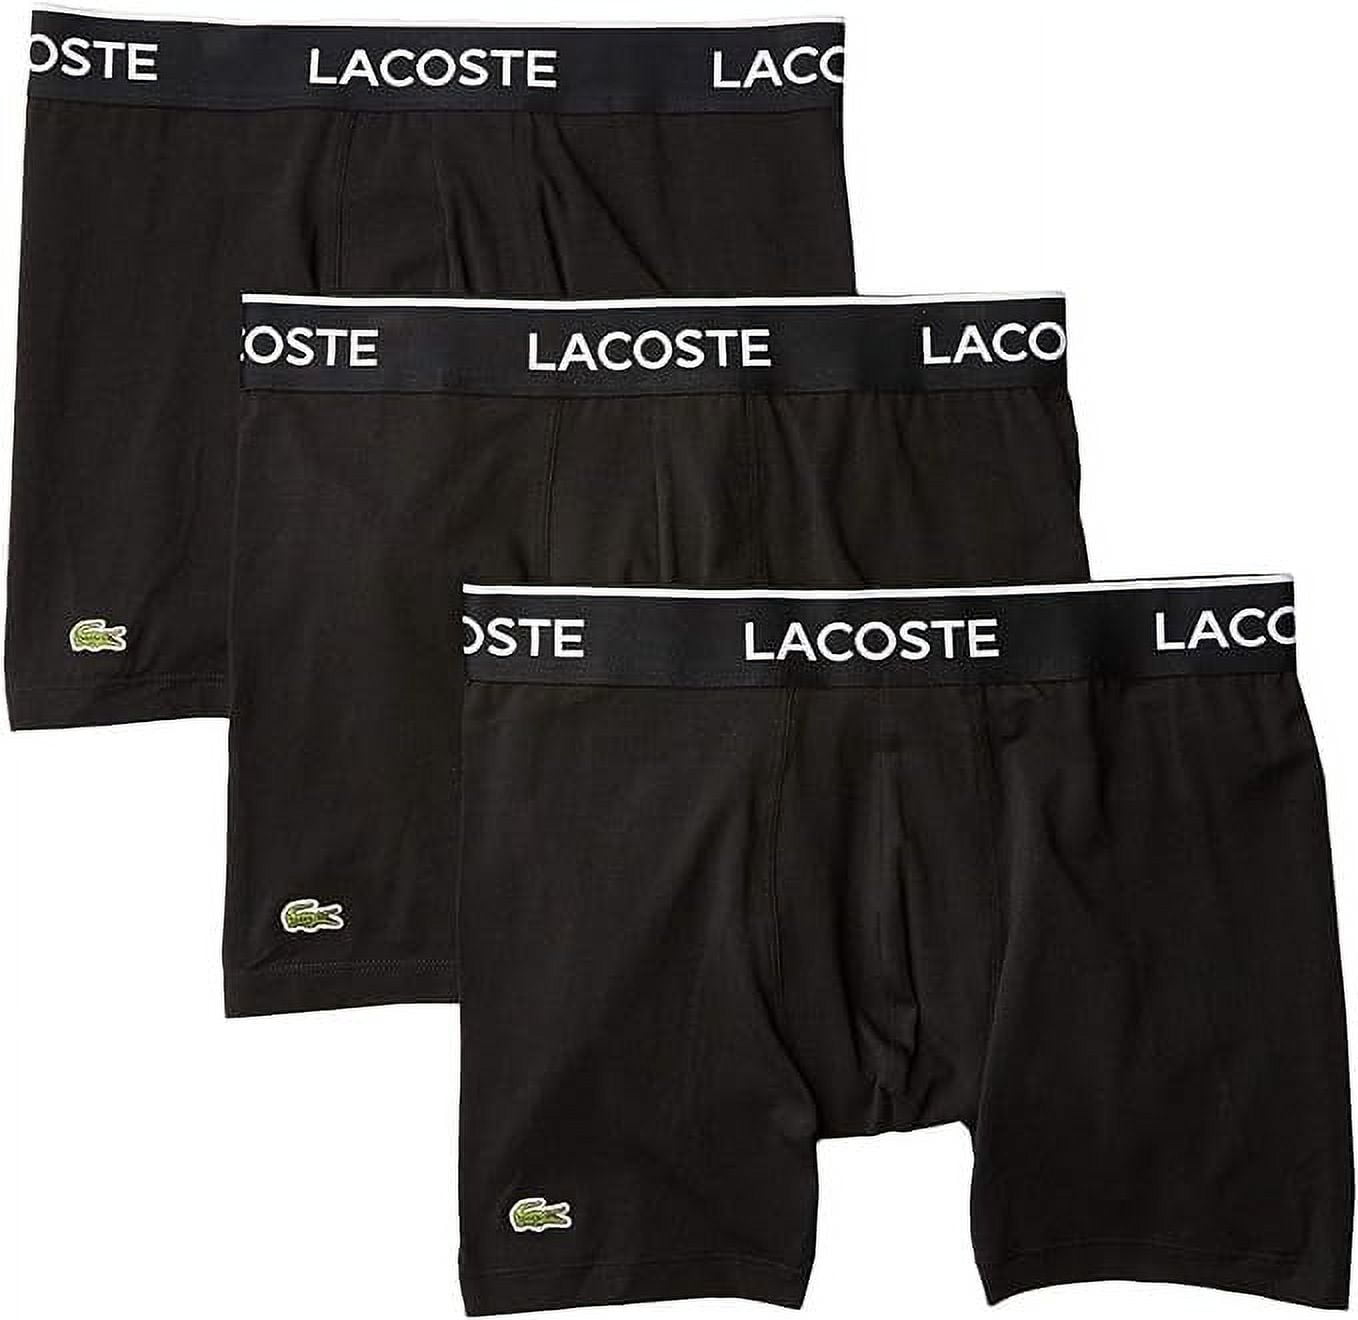 Lacoste Men's Slips (3 Pack)